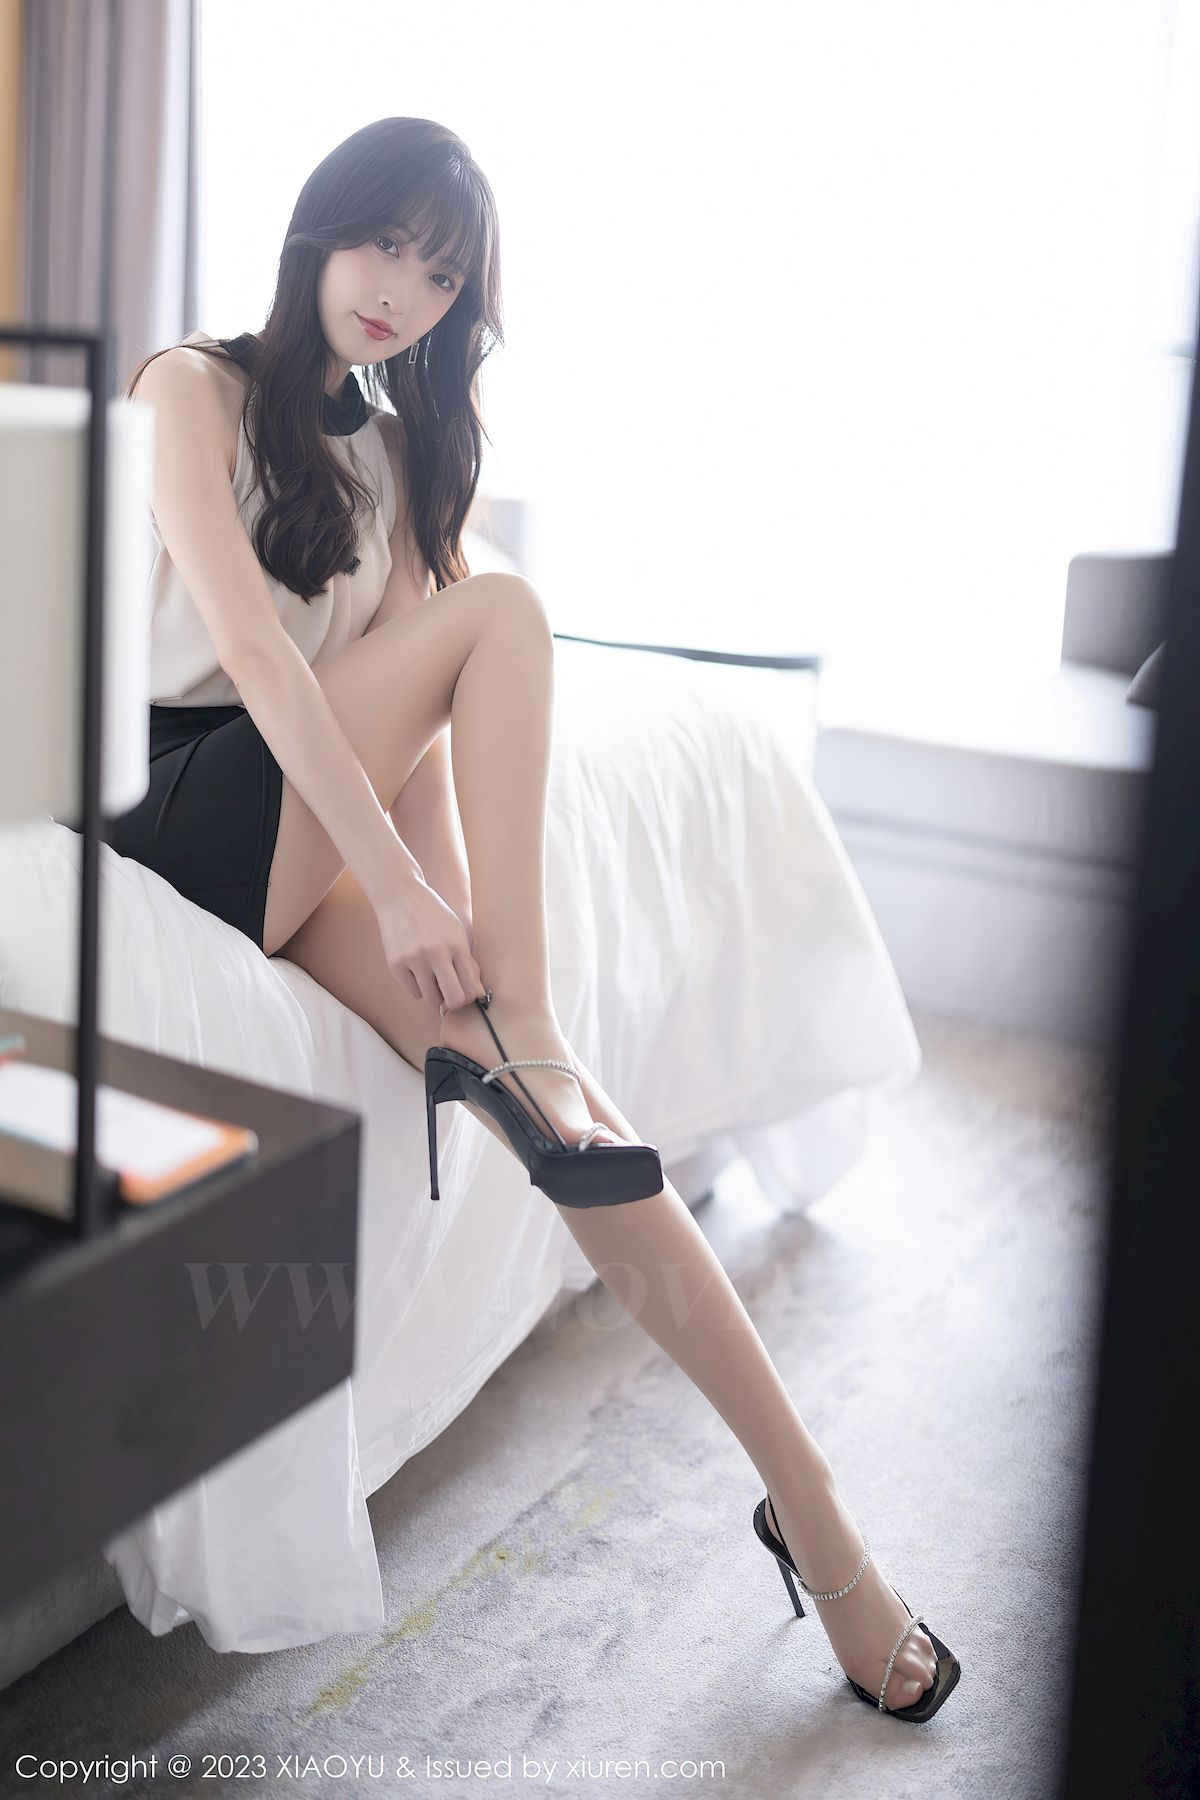 林星阑浅色上衣搭配黑色短裙性感写真